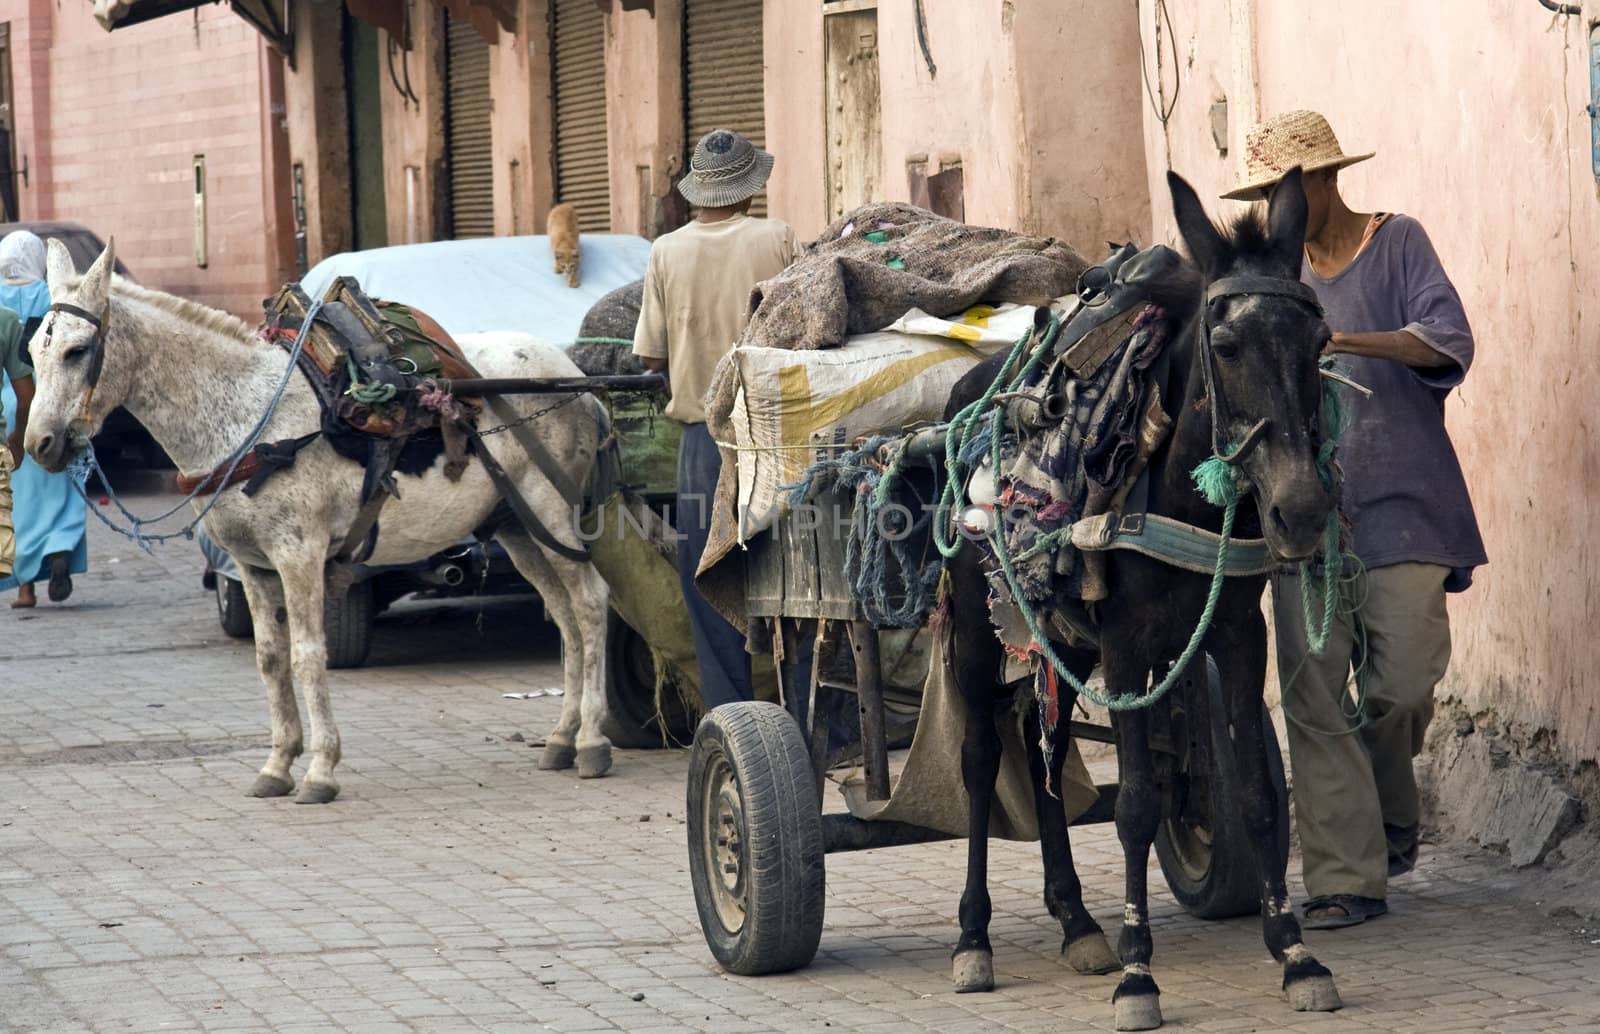 Horse and cart, Marrakech, Morocco